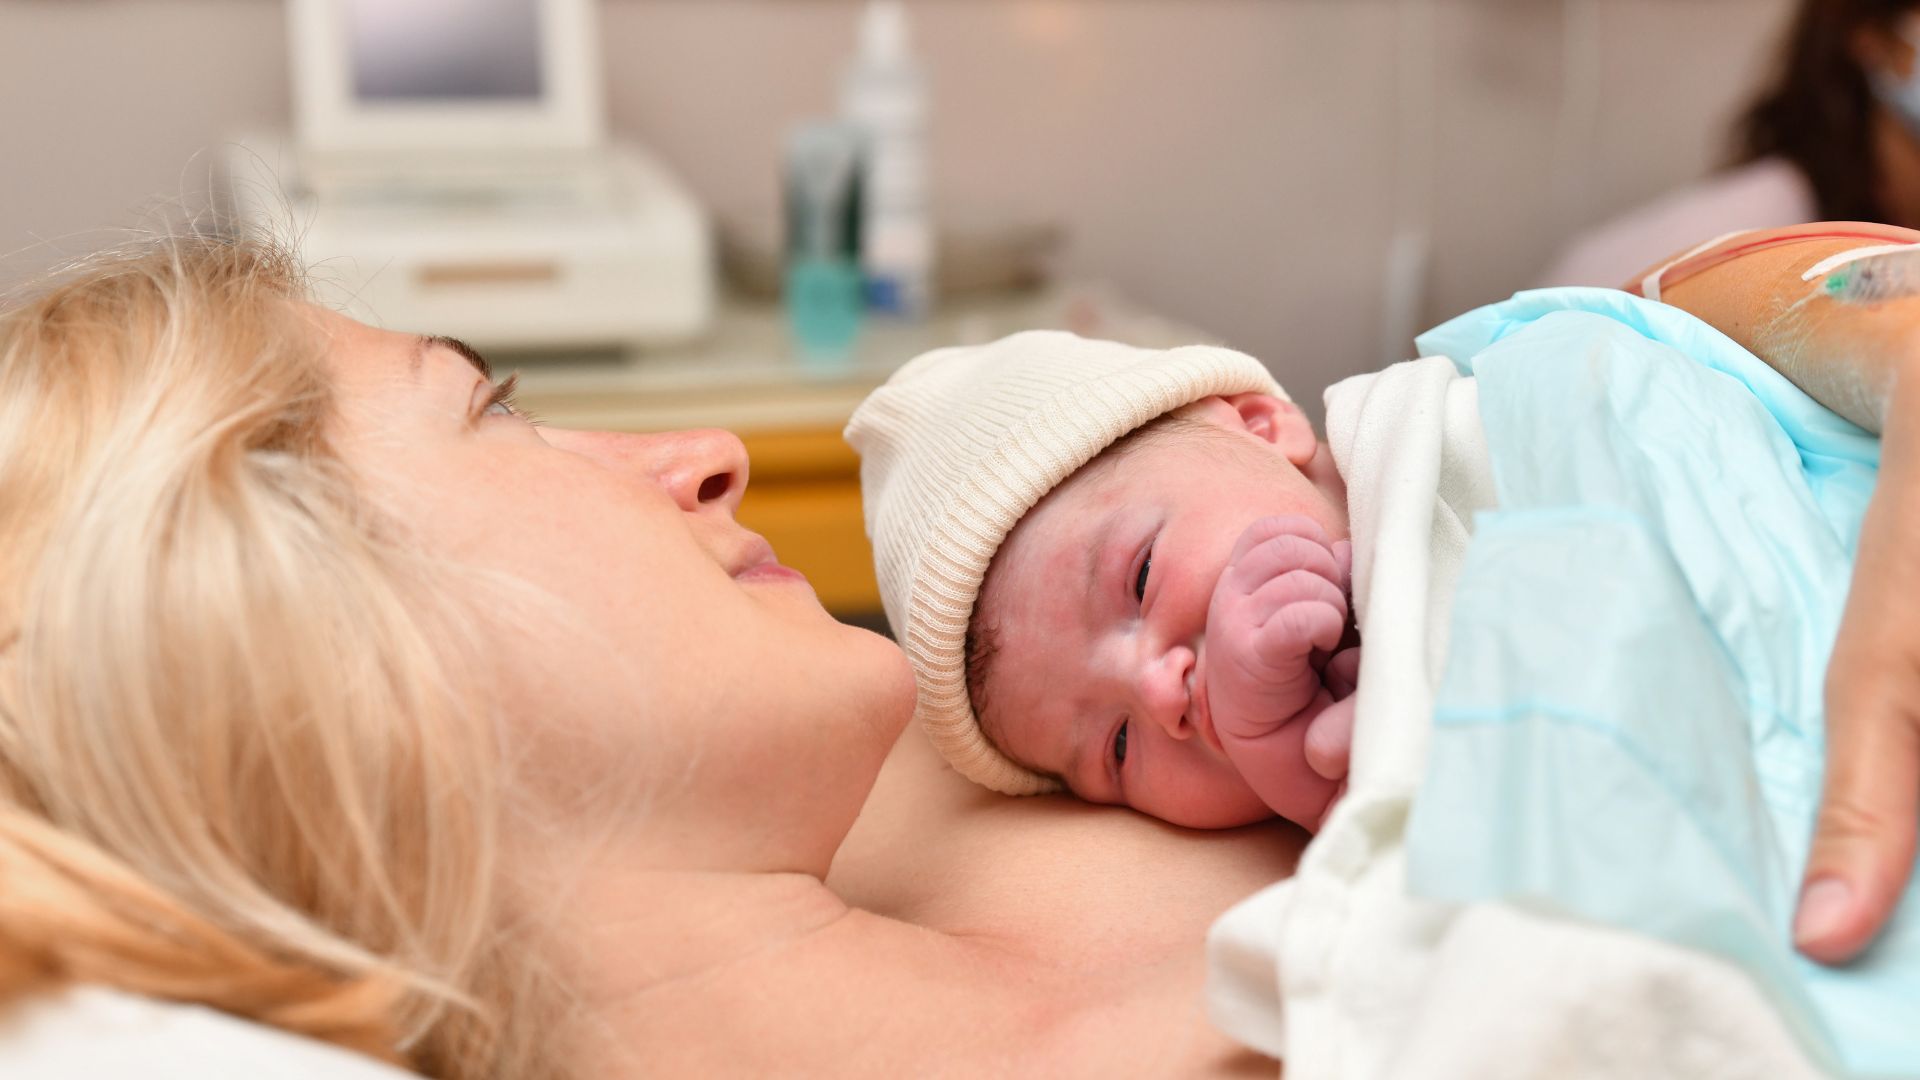 Nuit de java, baby blues, montée de lait : récit d’un troisième jour à la maternité